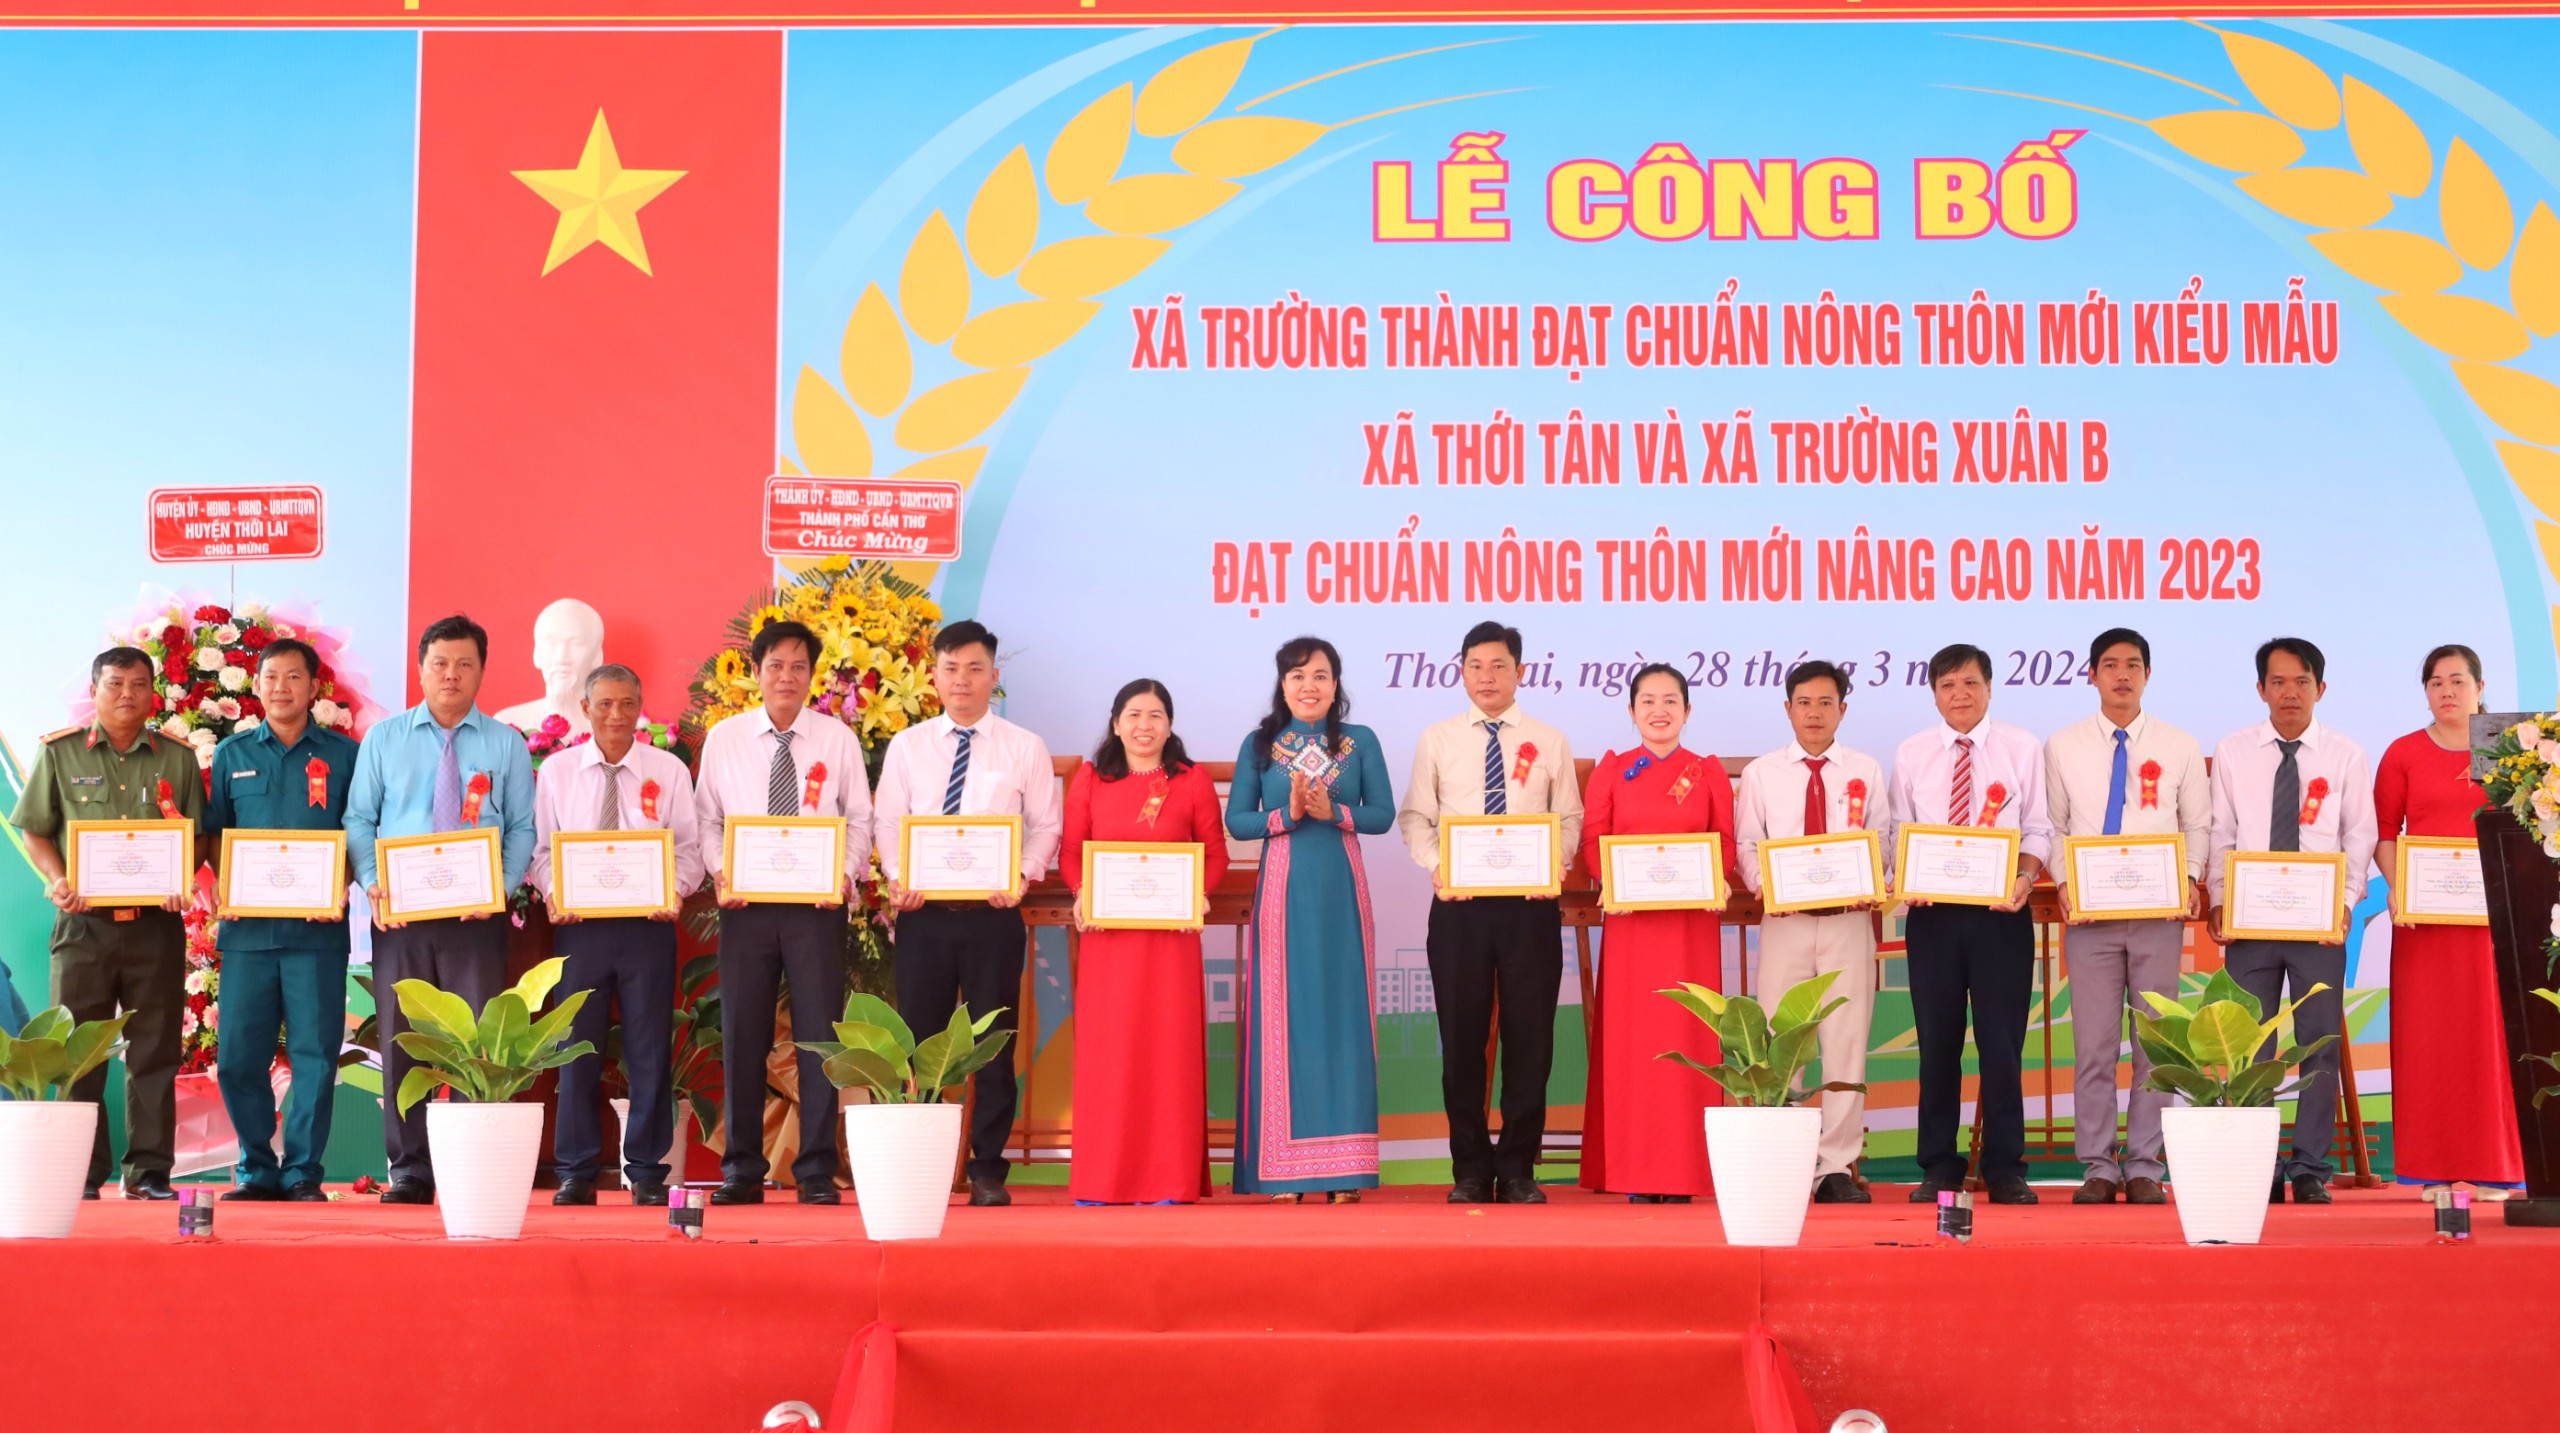 Bà Võ Kim Thoa - Chủ tịch Hội LHPN TP. Cần Thơ trao tặng giấy khen của Văn phòng Điều phối nông thôn mới cho các cá nhân có những đóng góp trong xây dựng NTM.